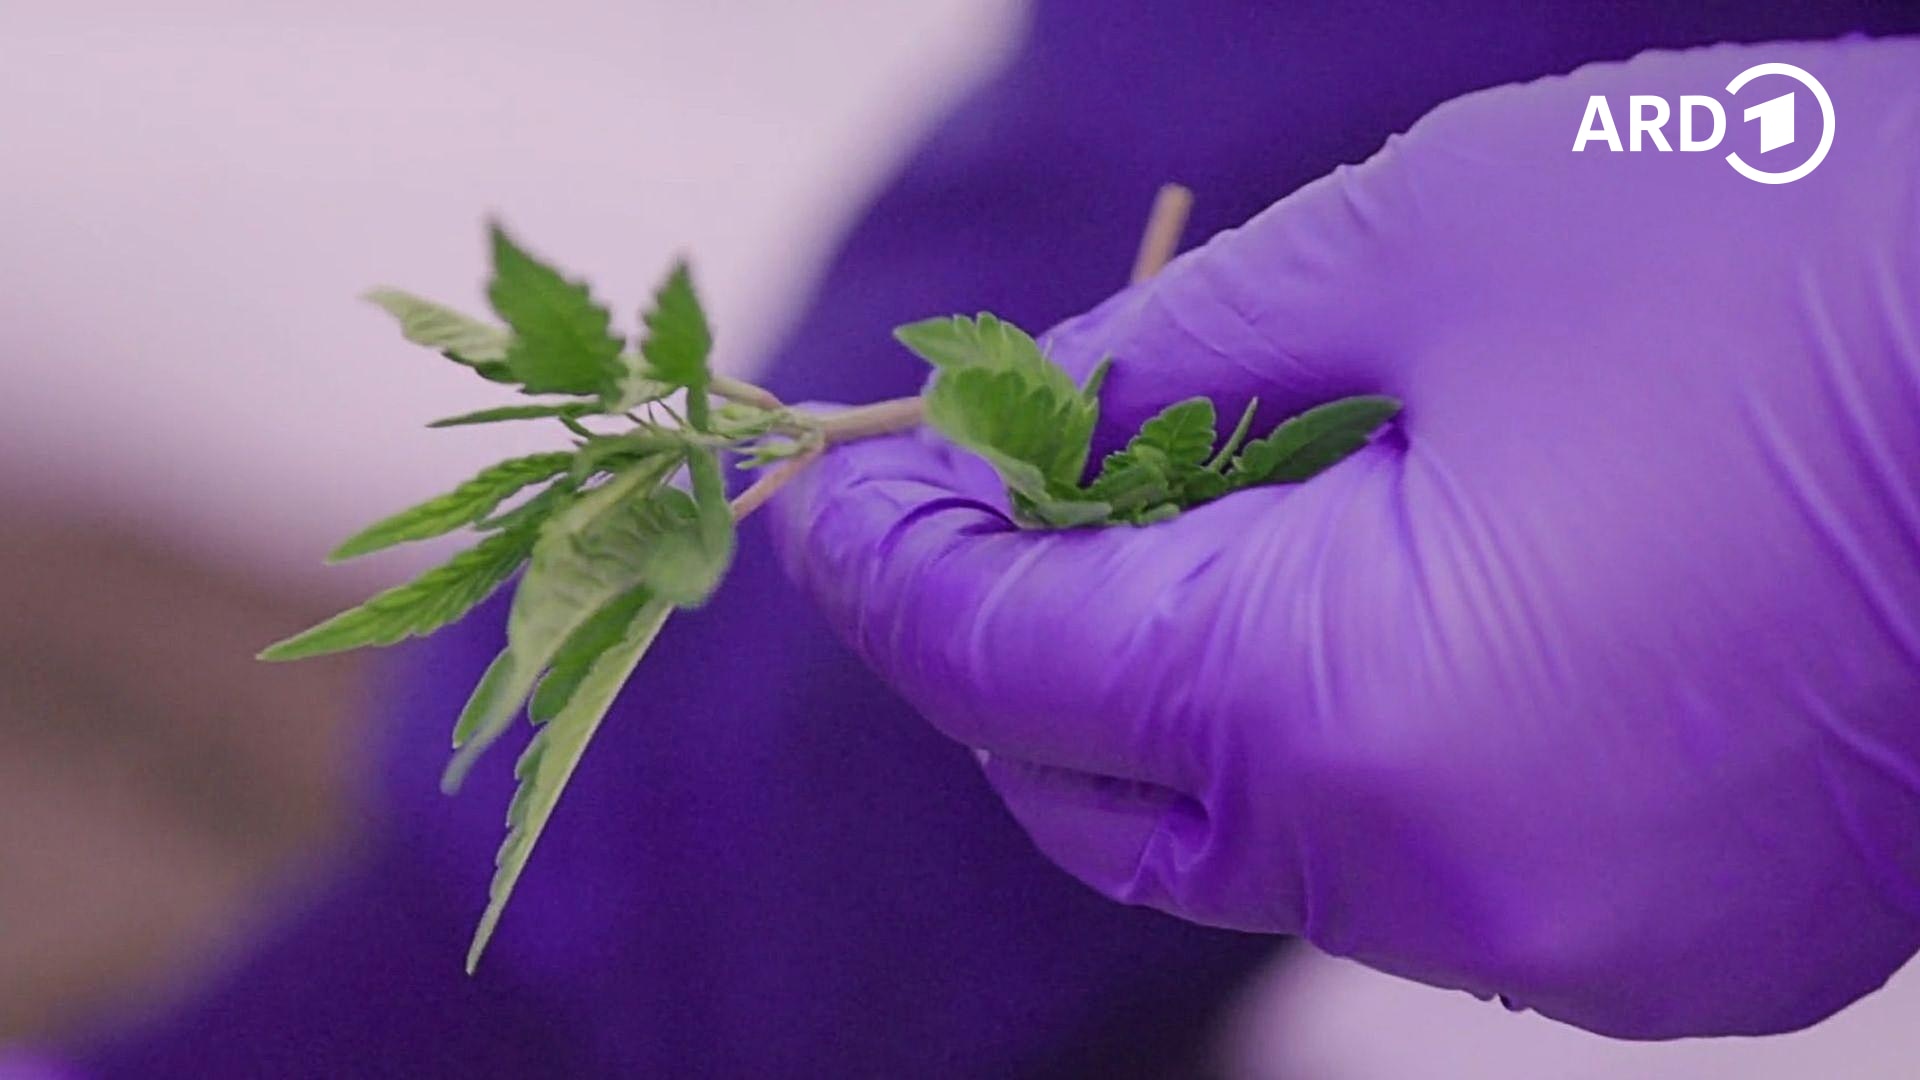 Gras auf Rezept - Medizinisches Cannabis im Kreuzfeuer